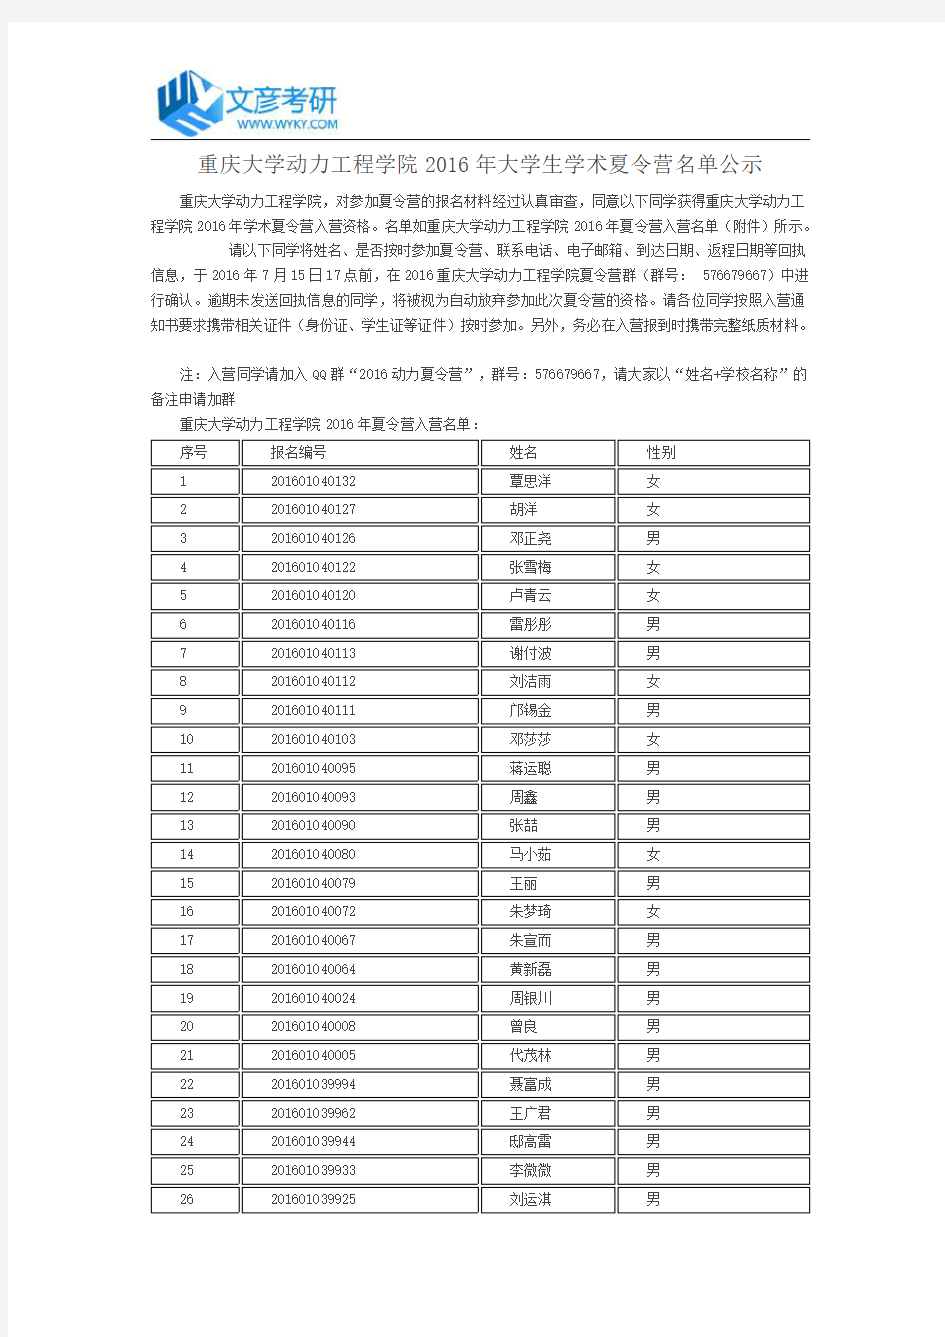 重庆大学动力工程学院2016年大学生学术夏令营名单公示